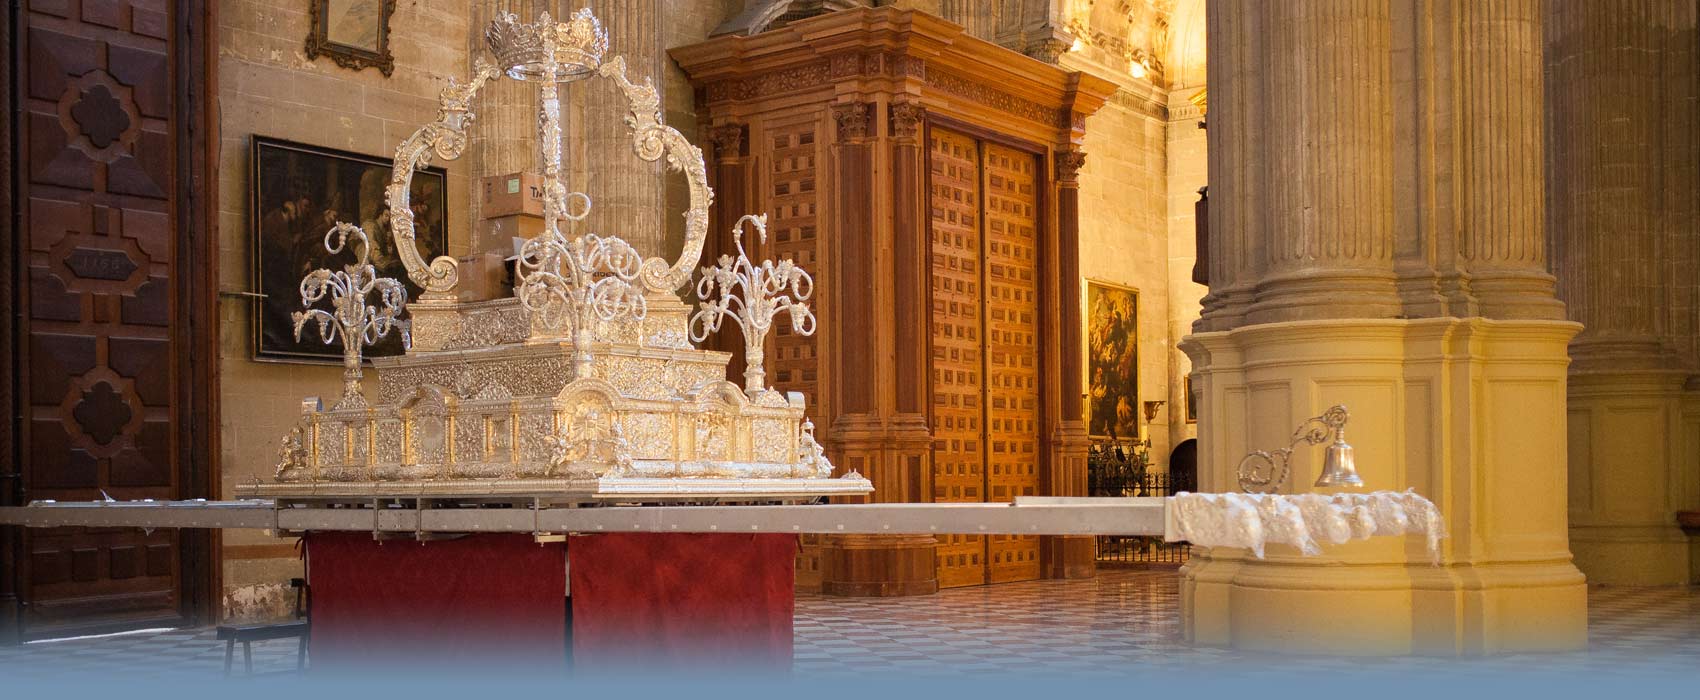 Kirchenaltar für die Prozessionen in der Osterwoche von Malaga